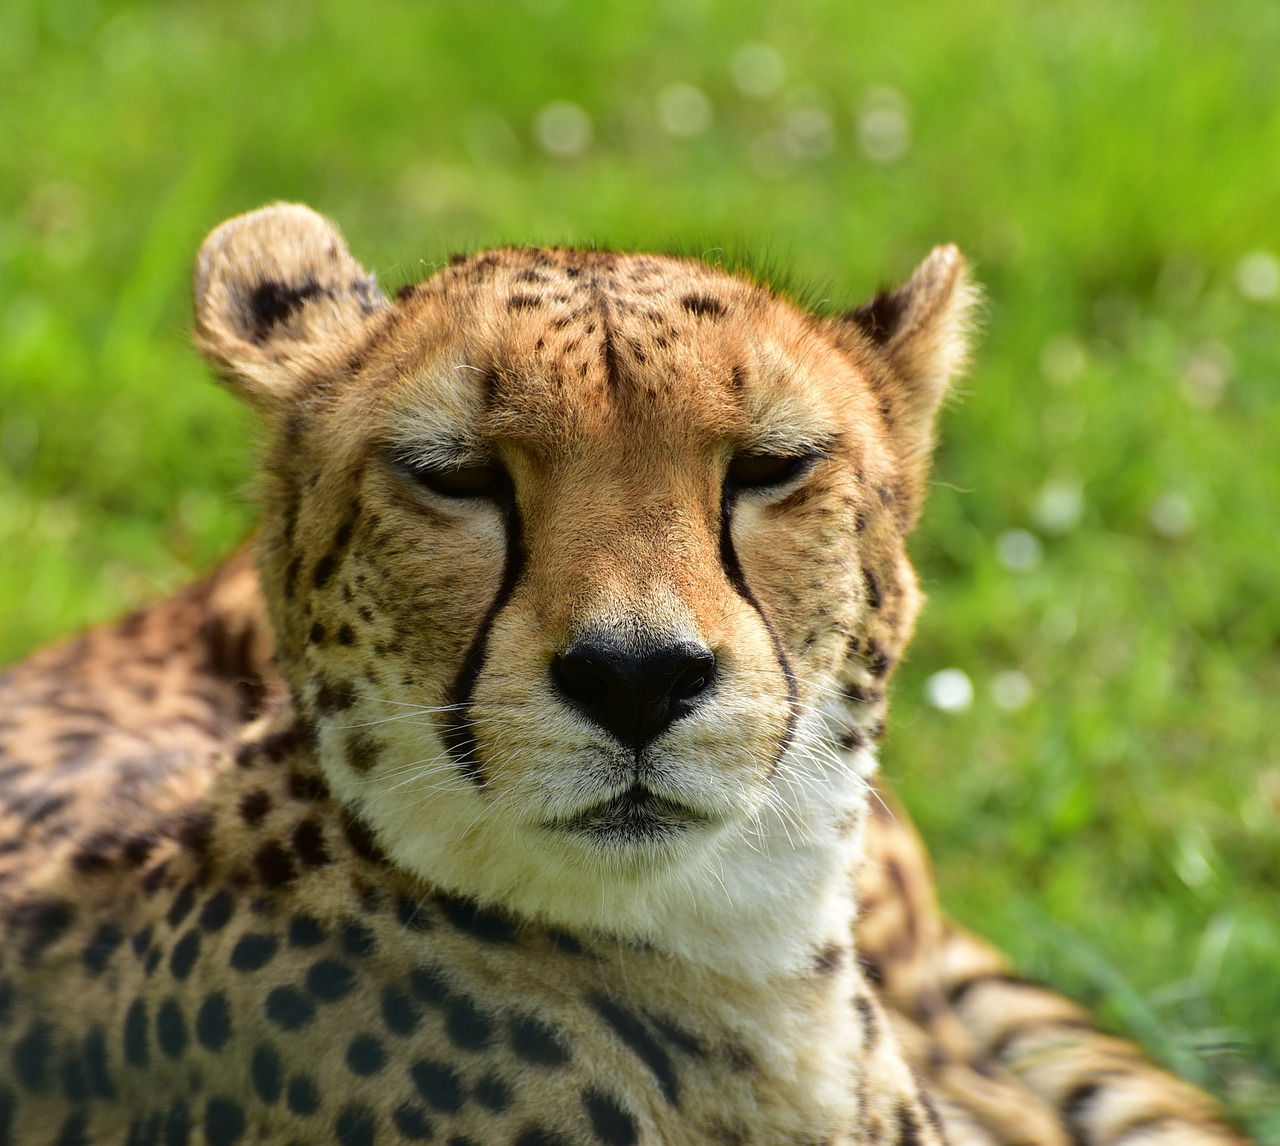 cheetah cat nature free photo